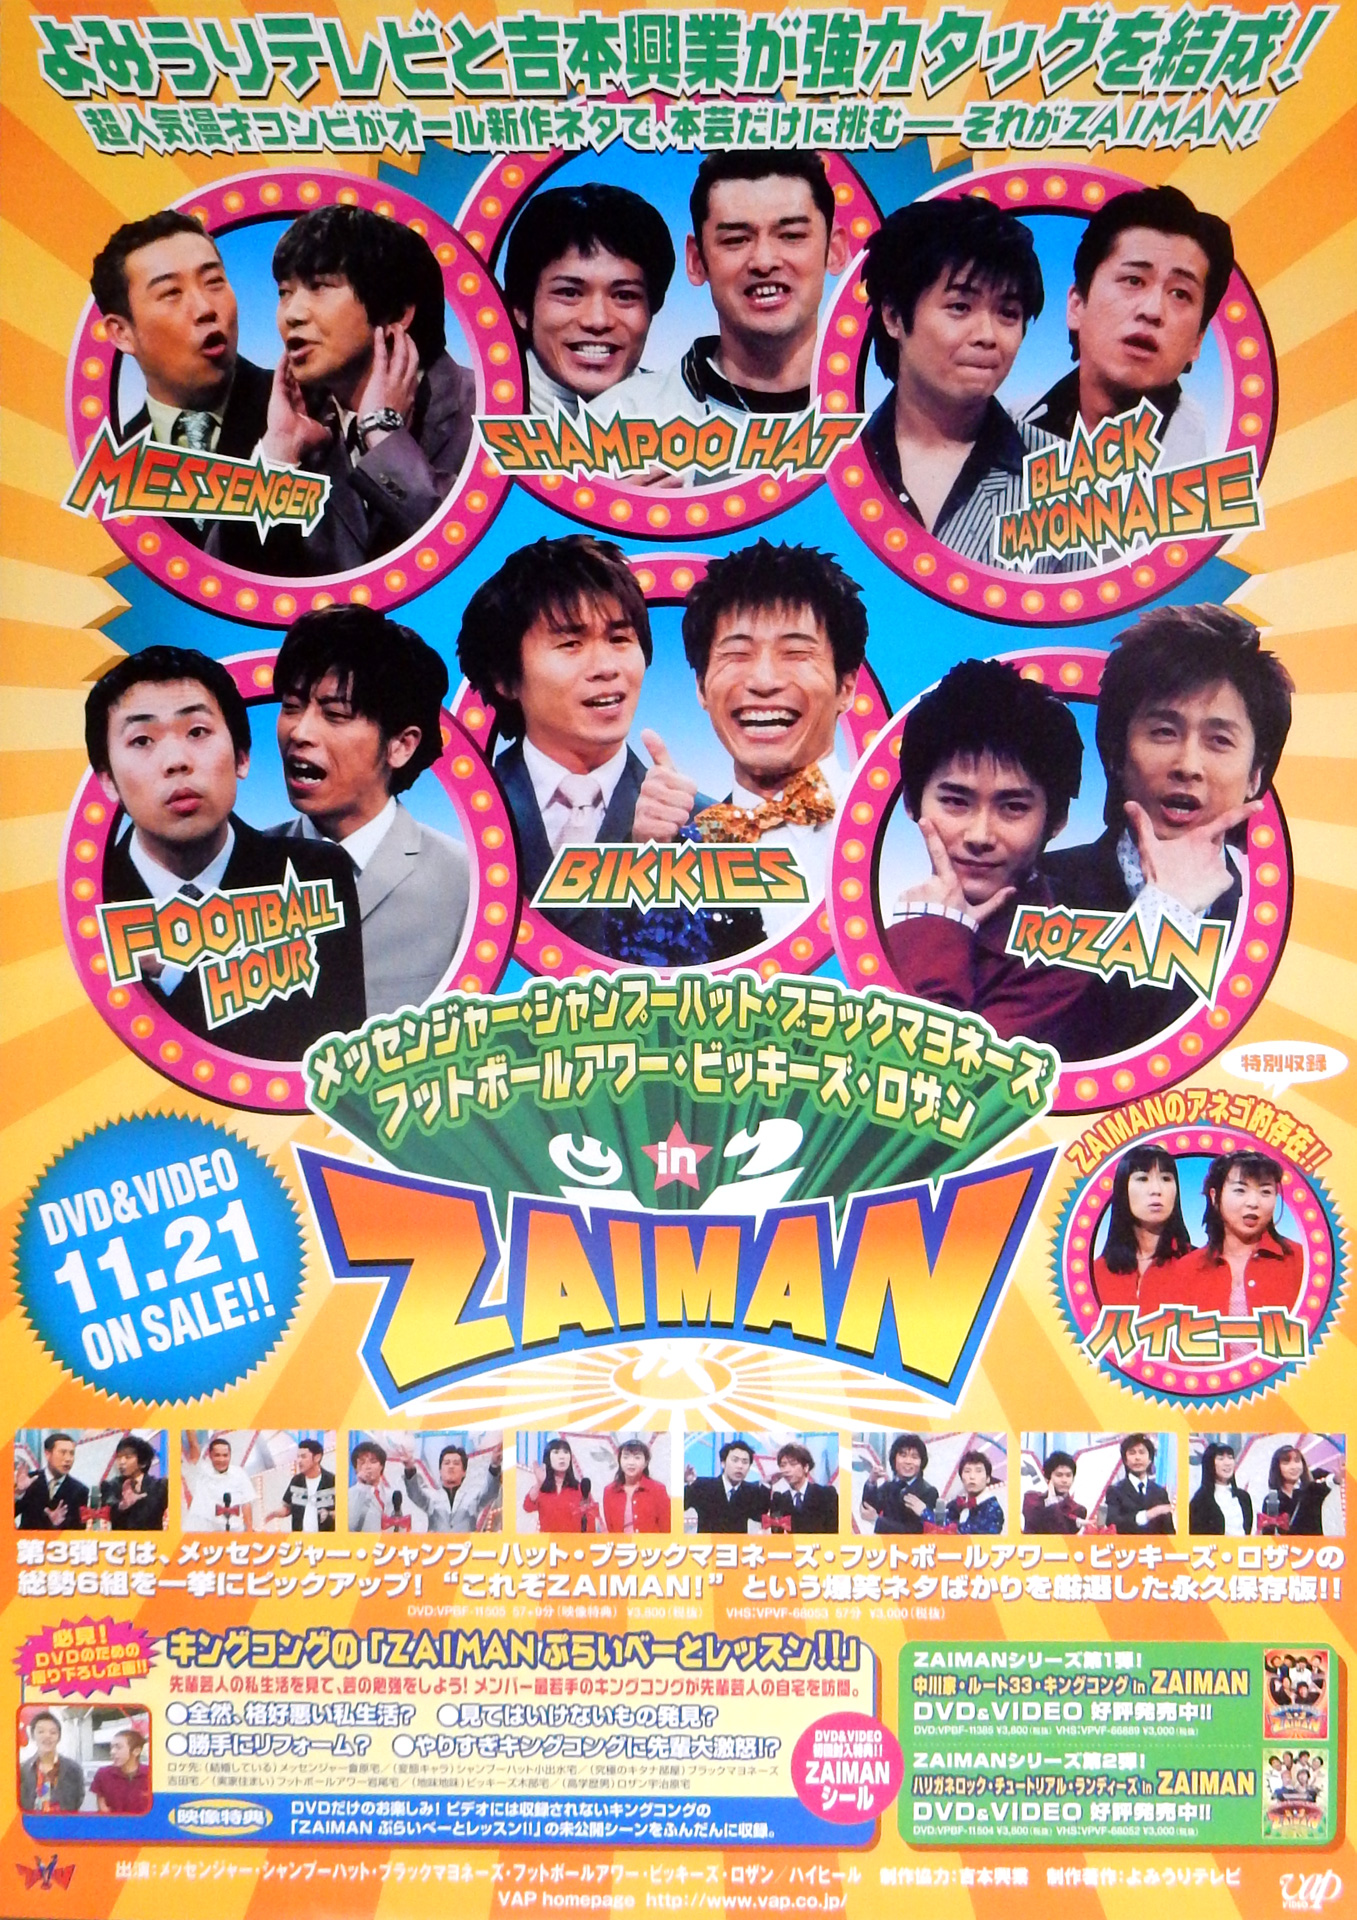 ZAIMAN メッセンジャー・シャンプーハット・ブラックマヨネーズ・フットボールアワー・ビッキーズ・ロザンin ZAIMANのポスター